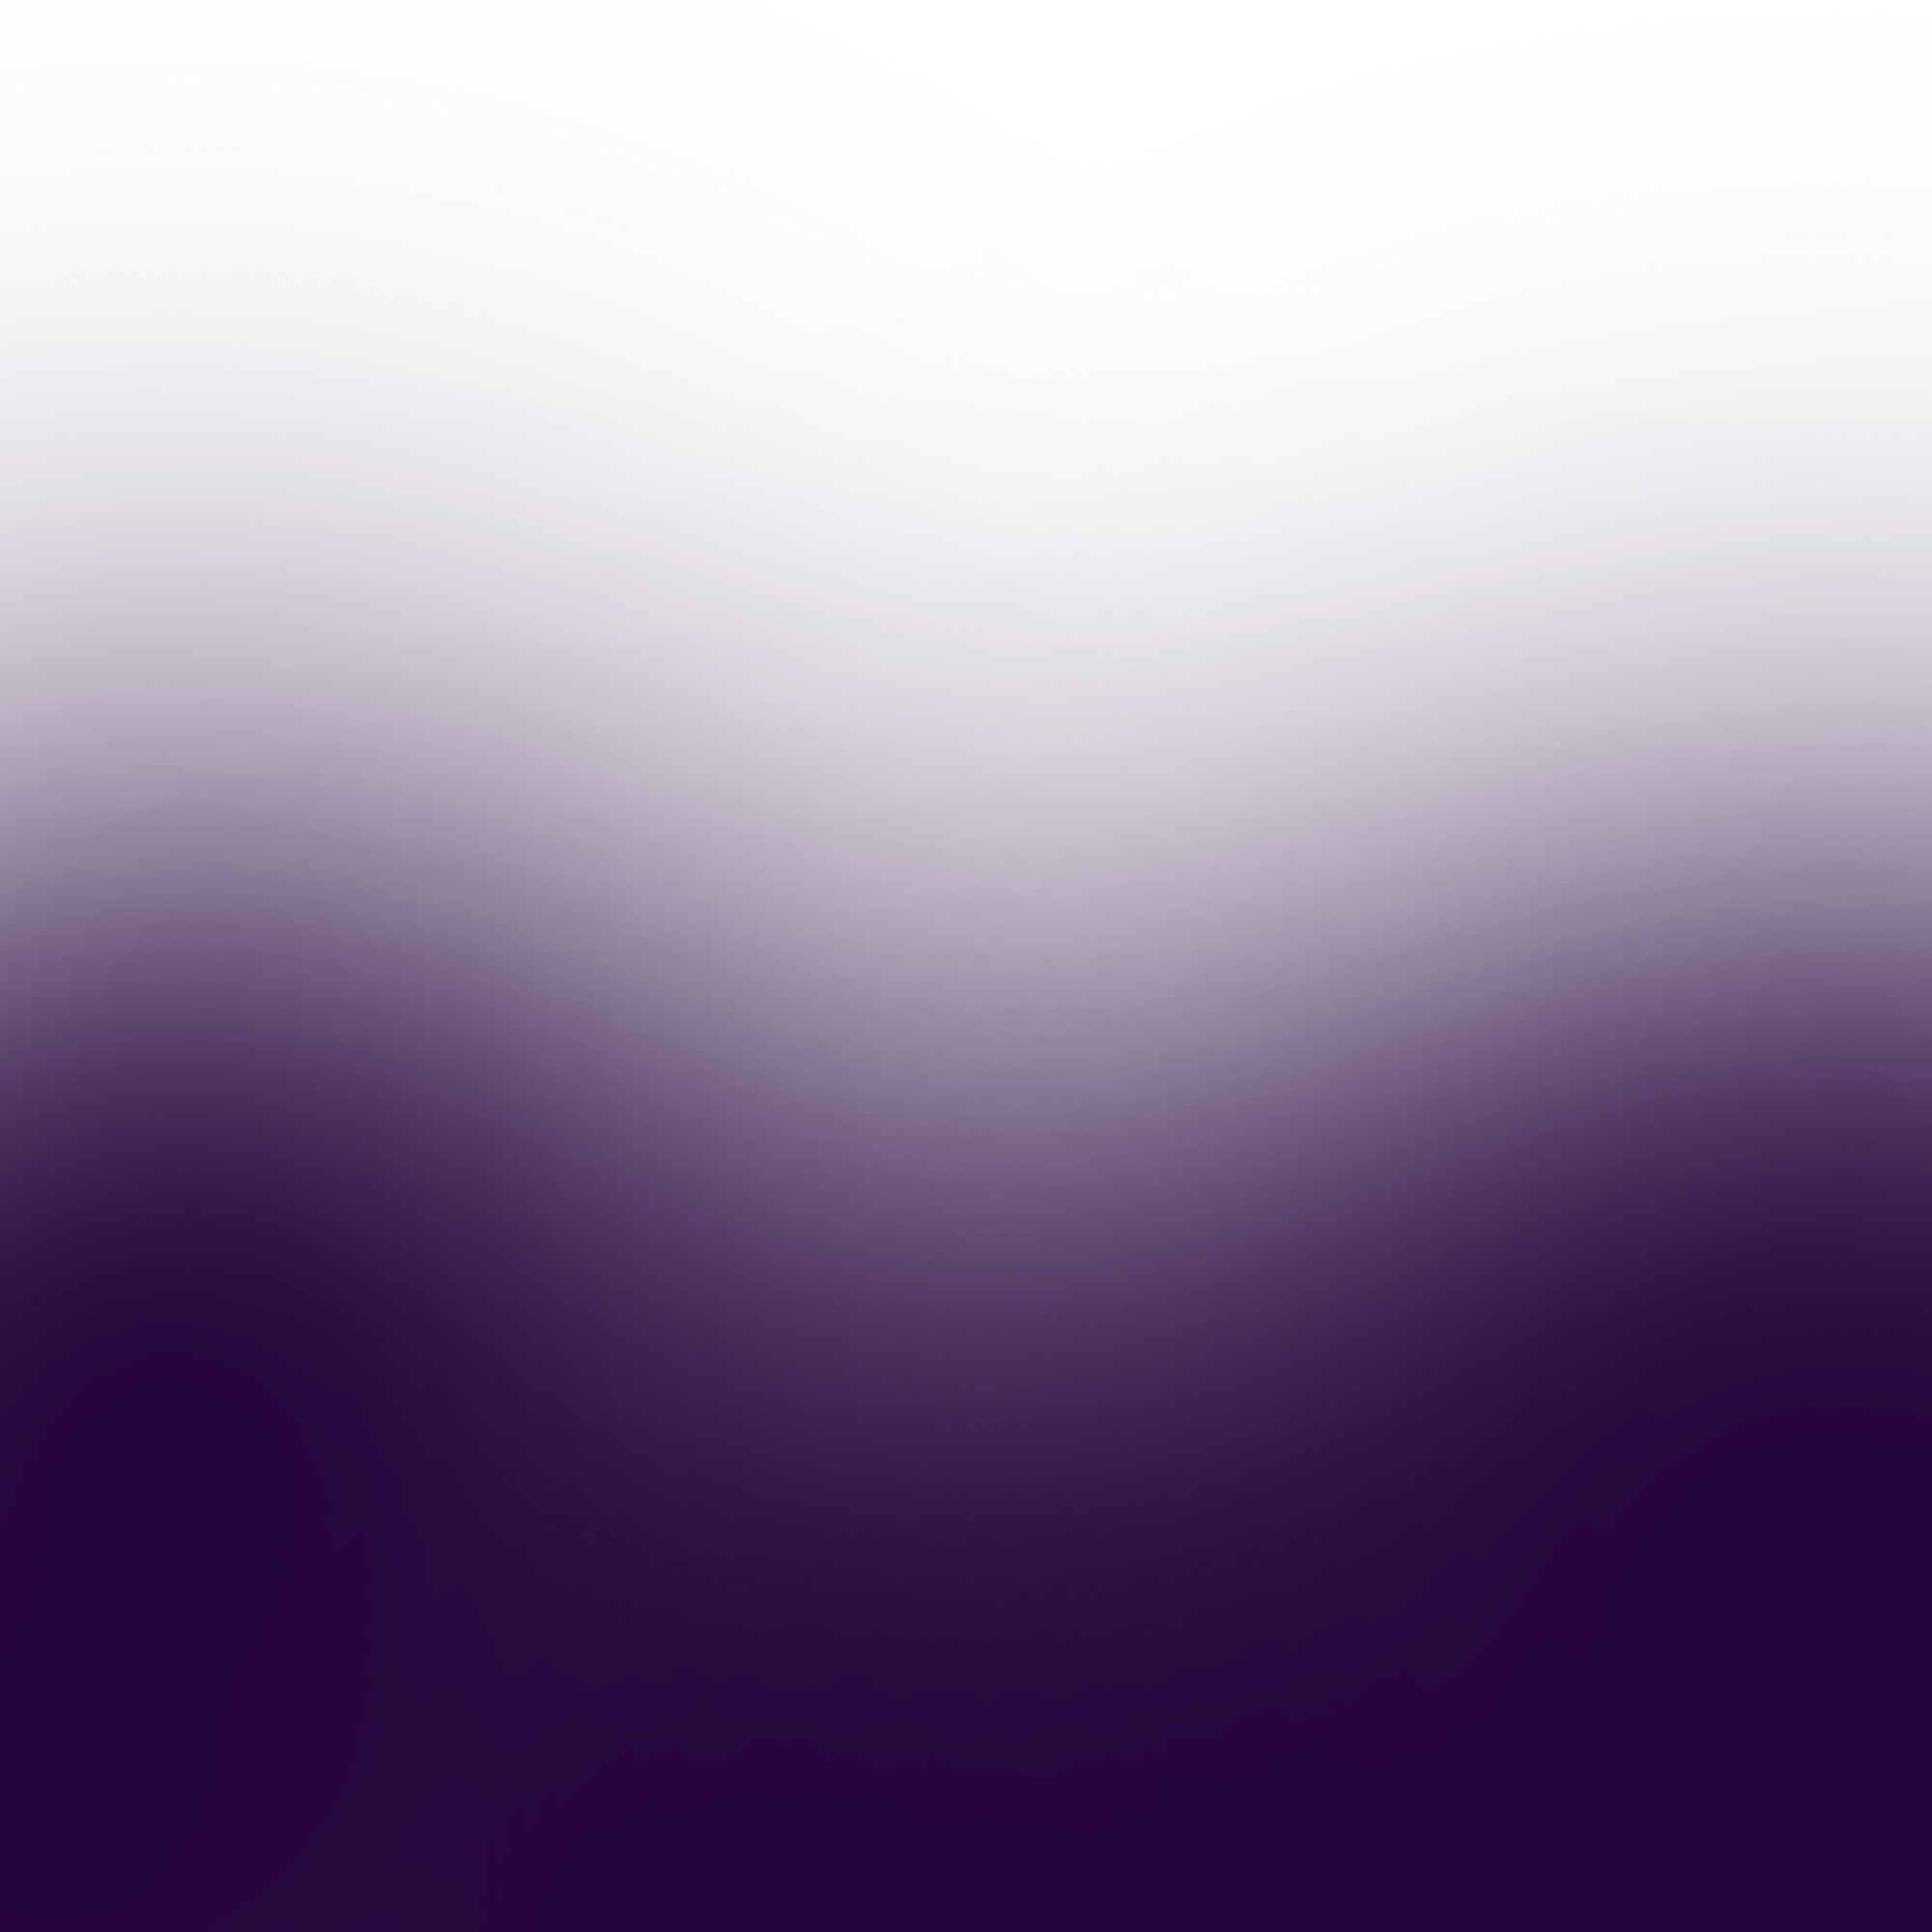 Dark Purple blurred background